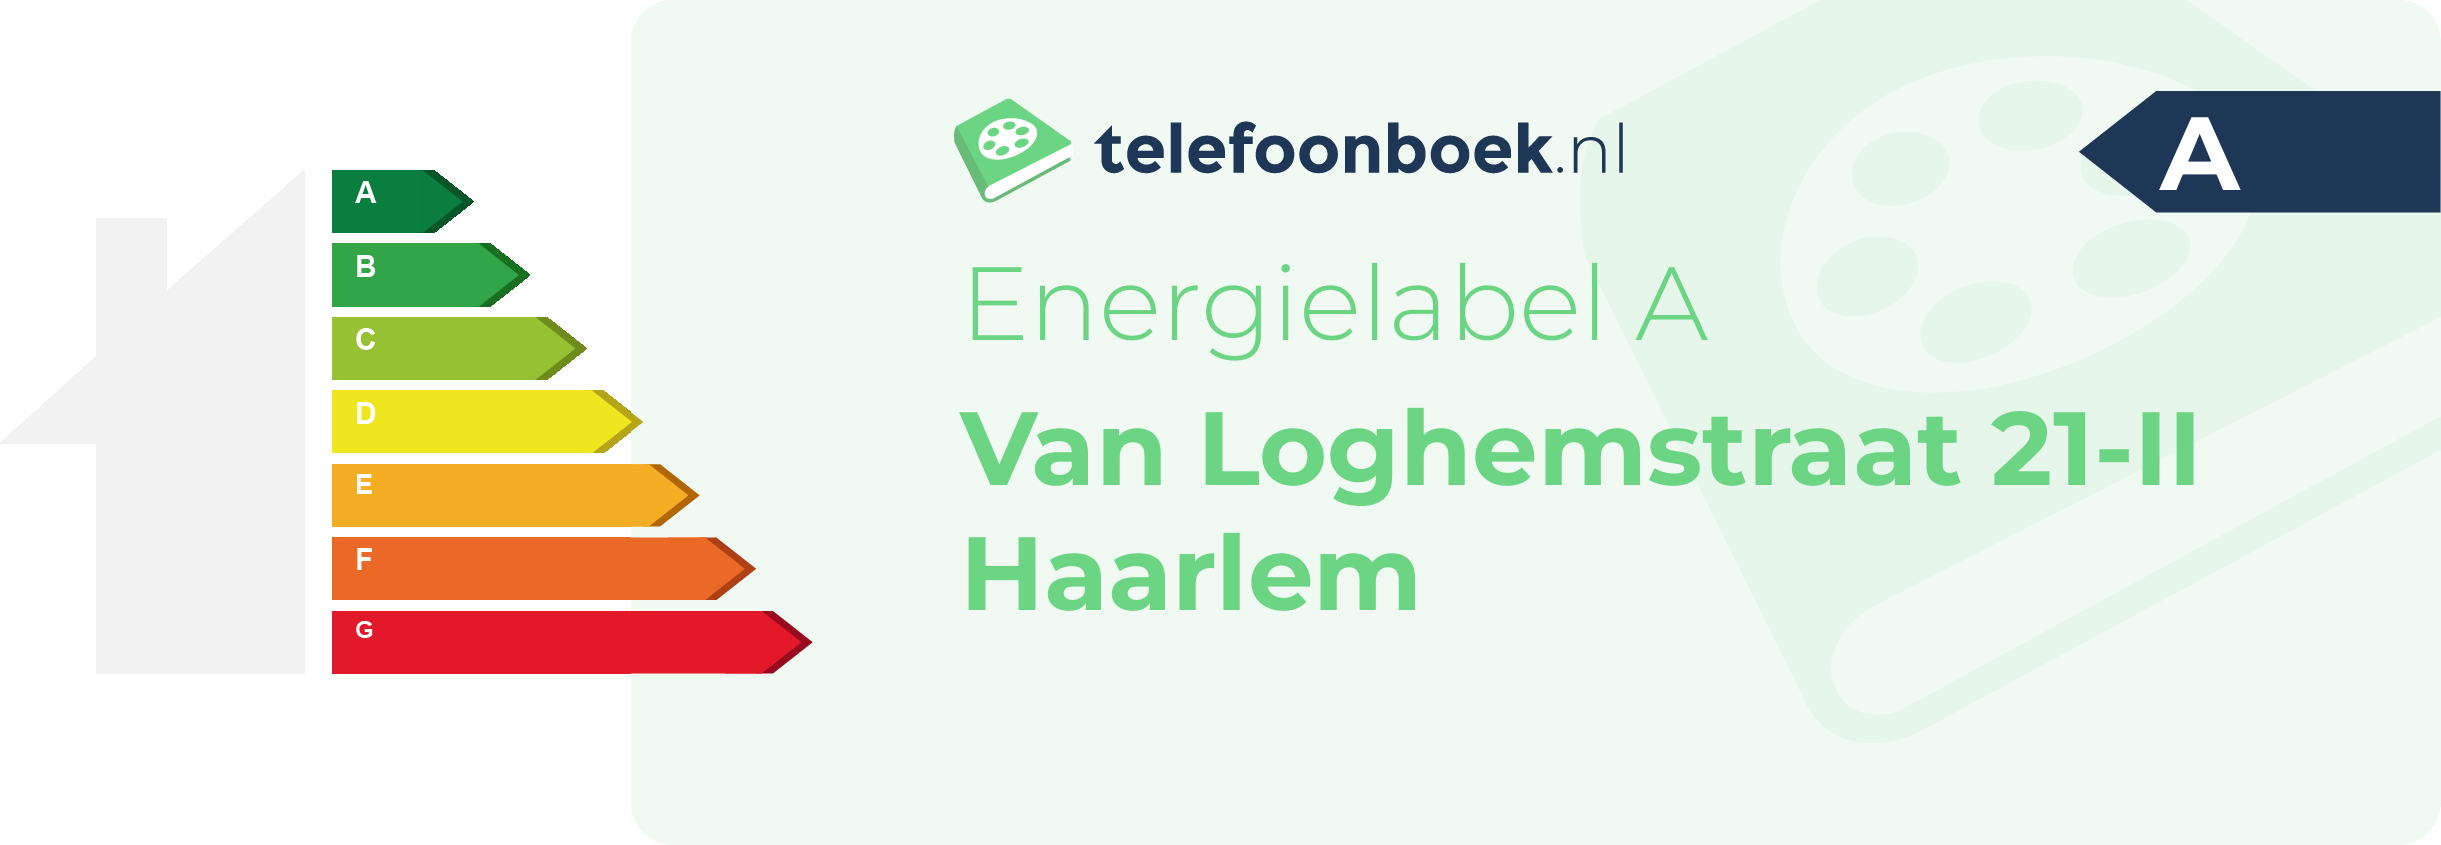 Energielabel Van Loghemstraat 21-II Haarlem